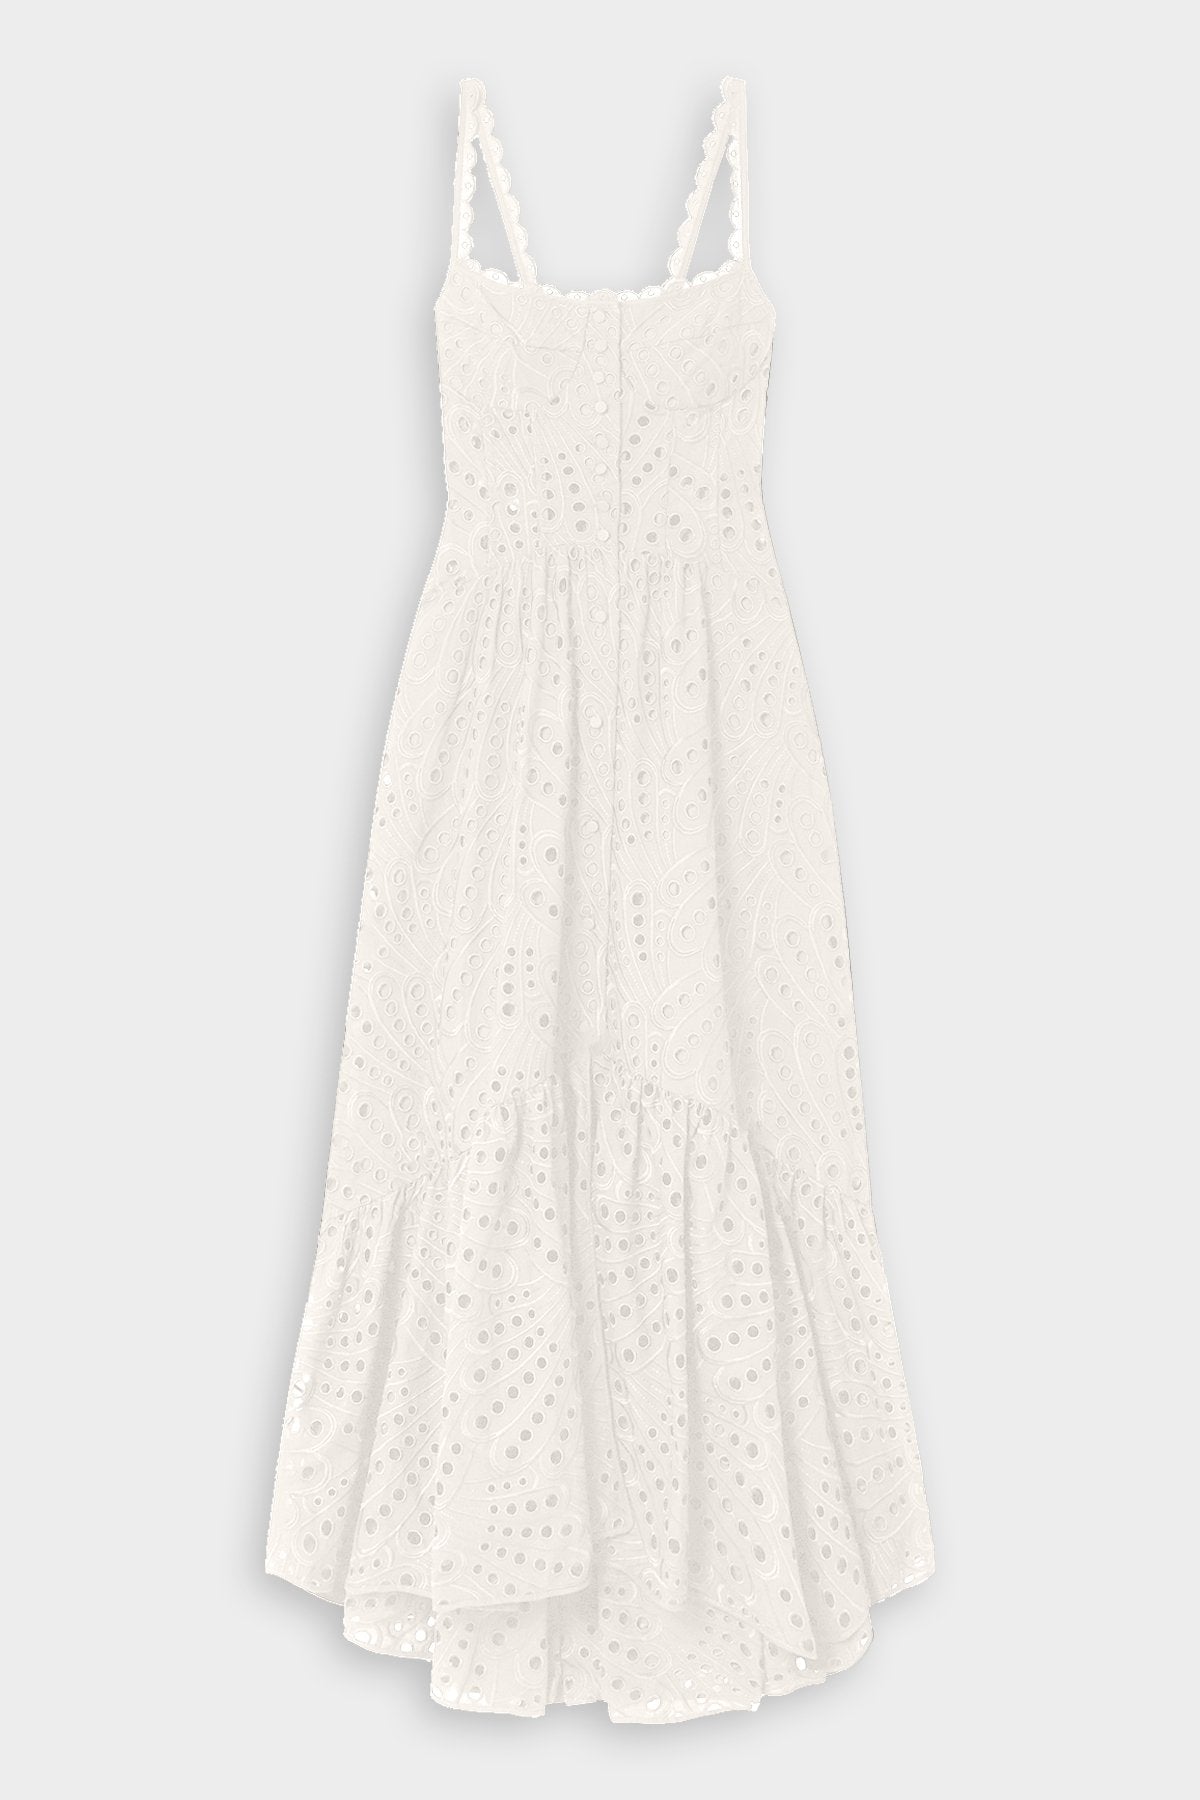 Irene Long Dress in White - shop-olivia.com